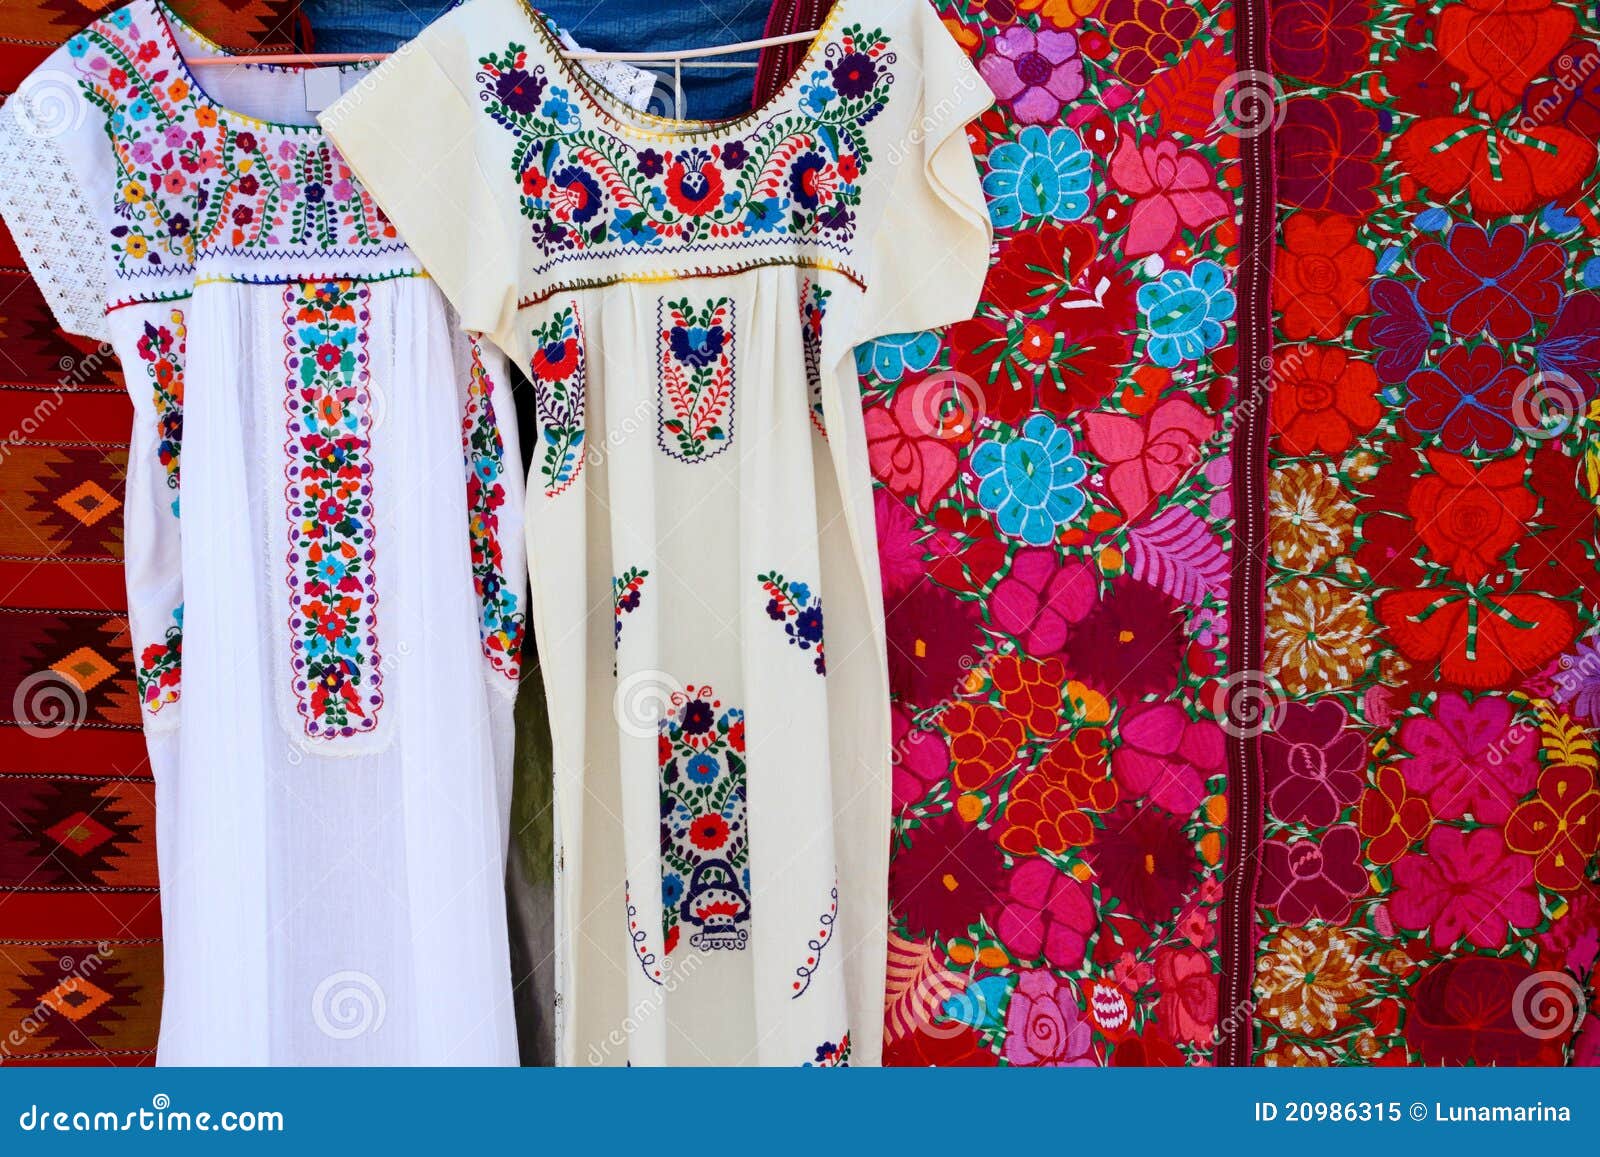 chiapas mayan dress embroidery and serape